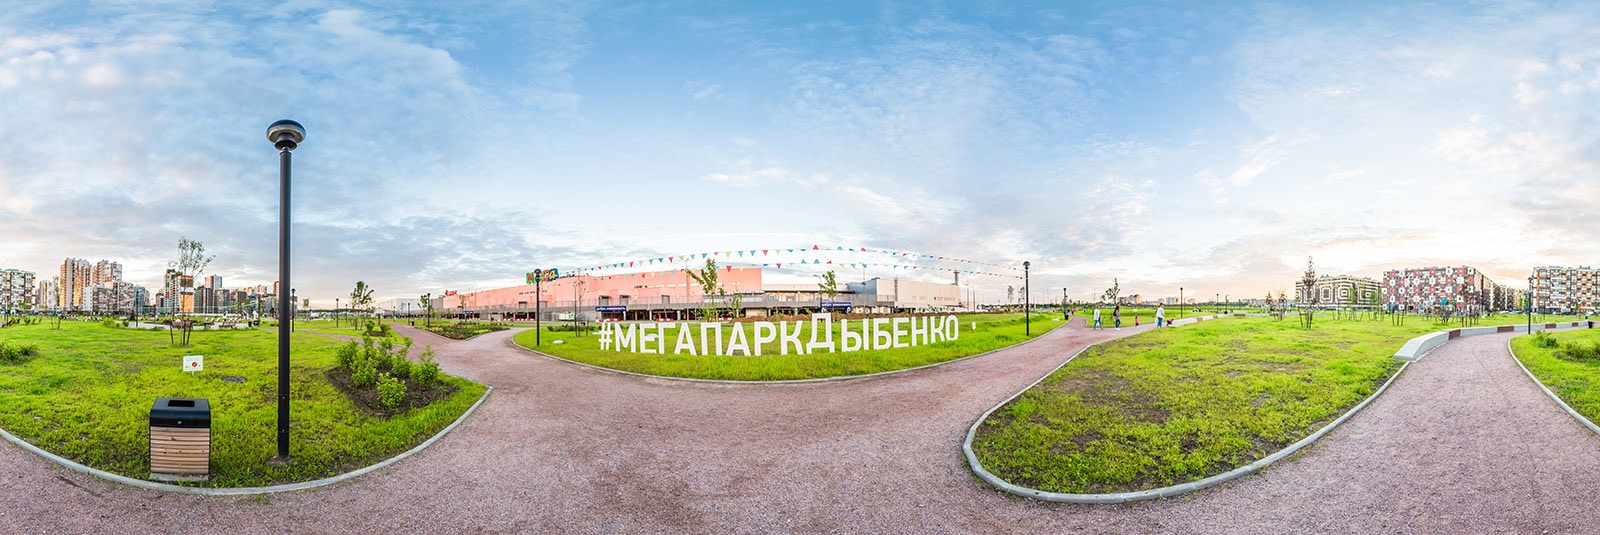 Мега Парк Дыбенко - Сферическаясъемка.рф